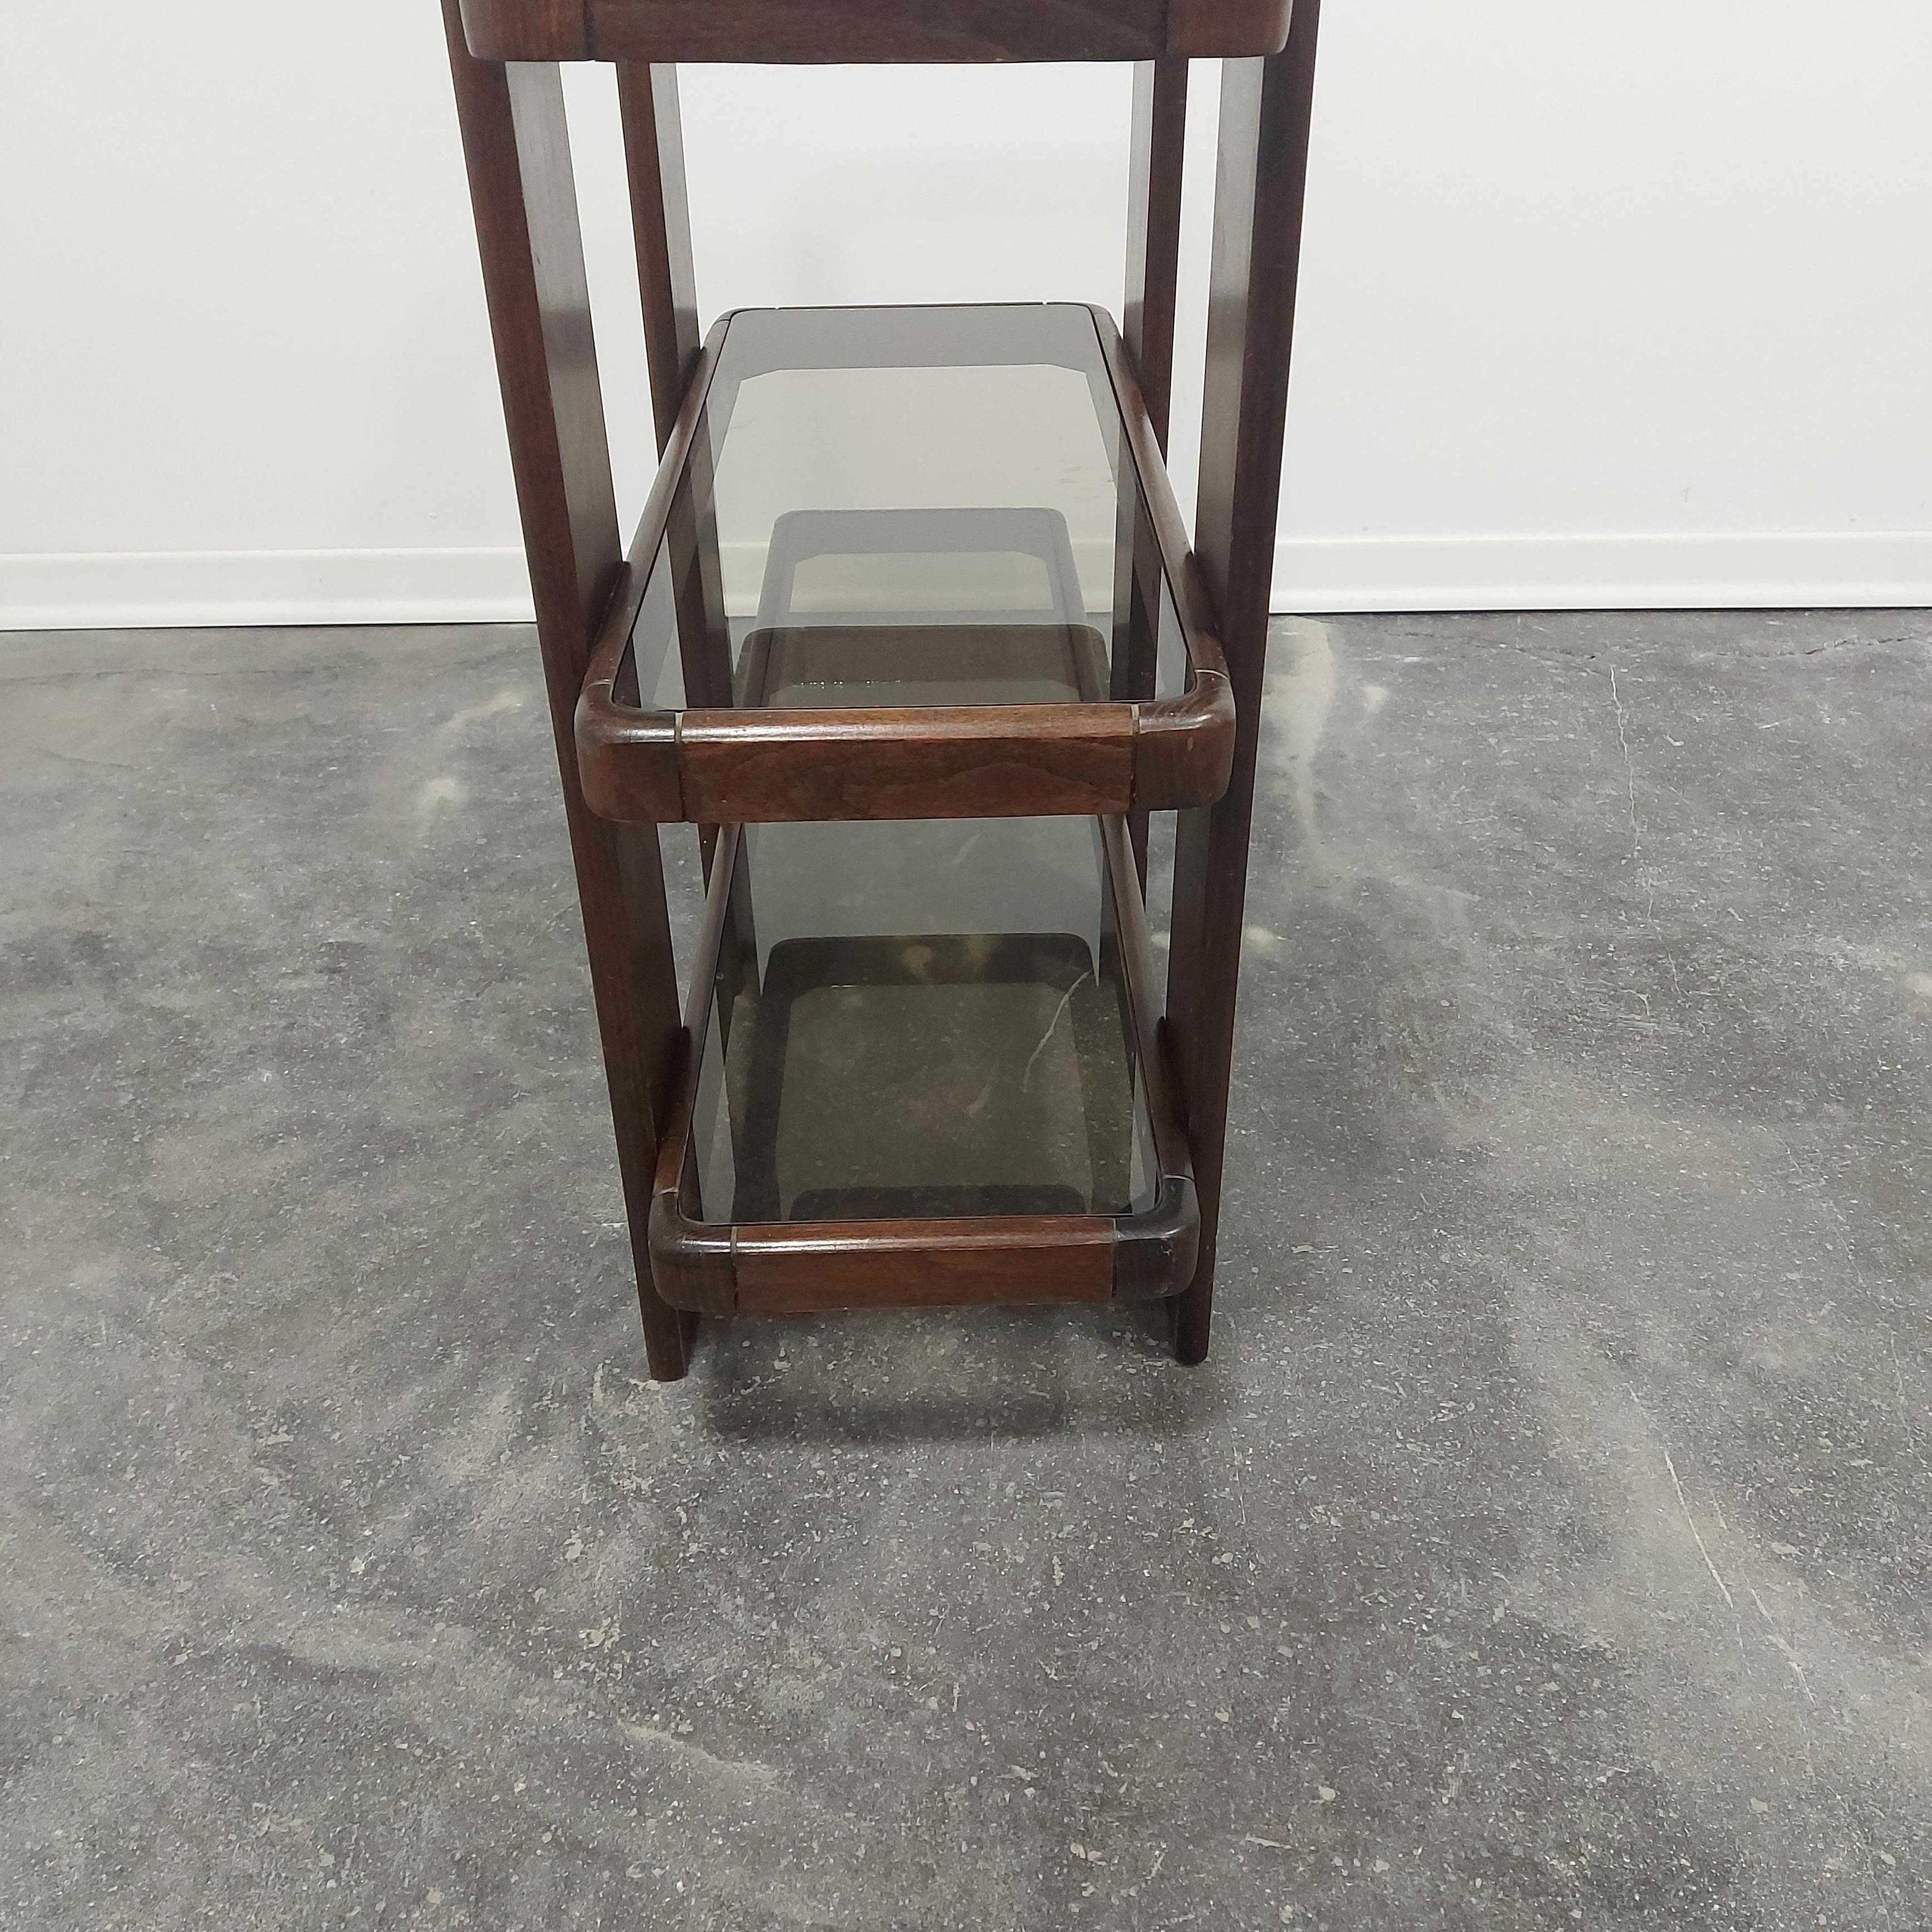 Meblo Tisch von Gianfranco Frattini 1960er Jahre.

Sehr seltenes Möbelstück.

MATERIAL: Holz und Räucherglas.

Der Tisch wurde von Gianfranco Frattini für Meblo entworfen.

Tolle Vintage-Patina.

Weltweiter Versand.

Die Versanddauer hängt von Ihrem